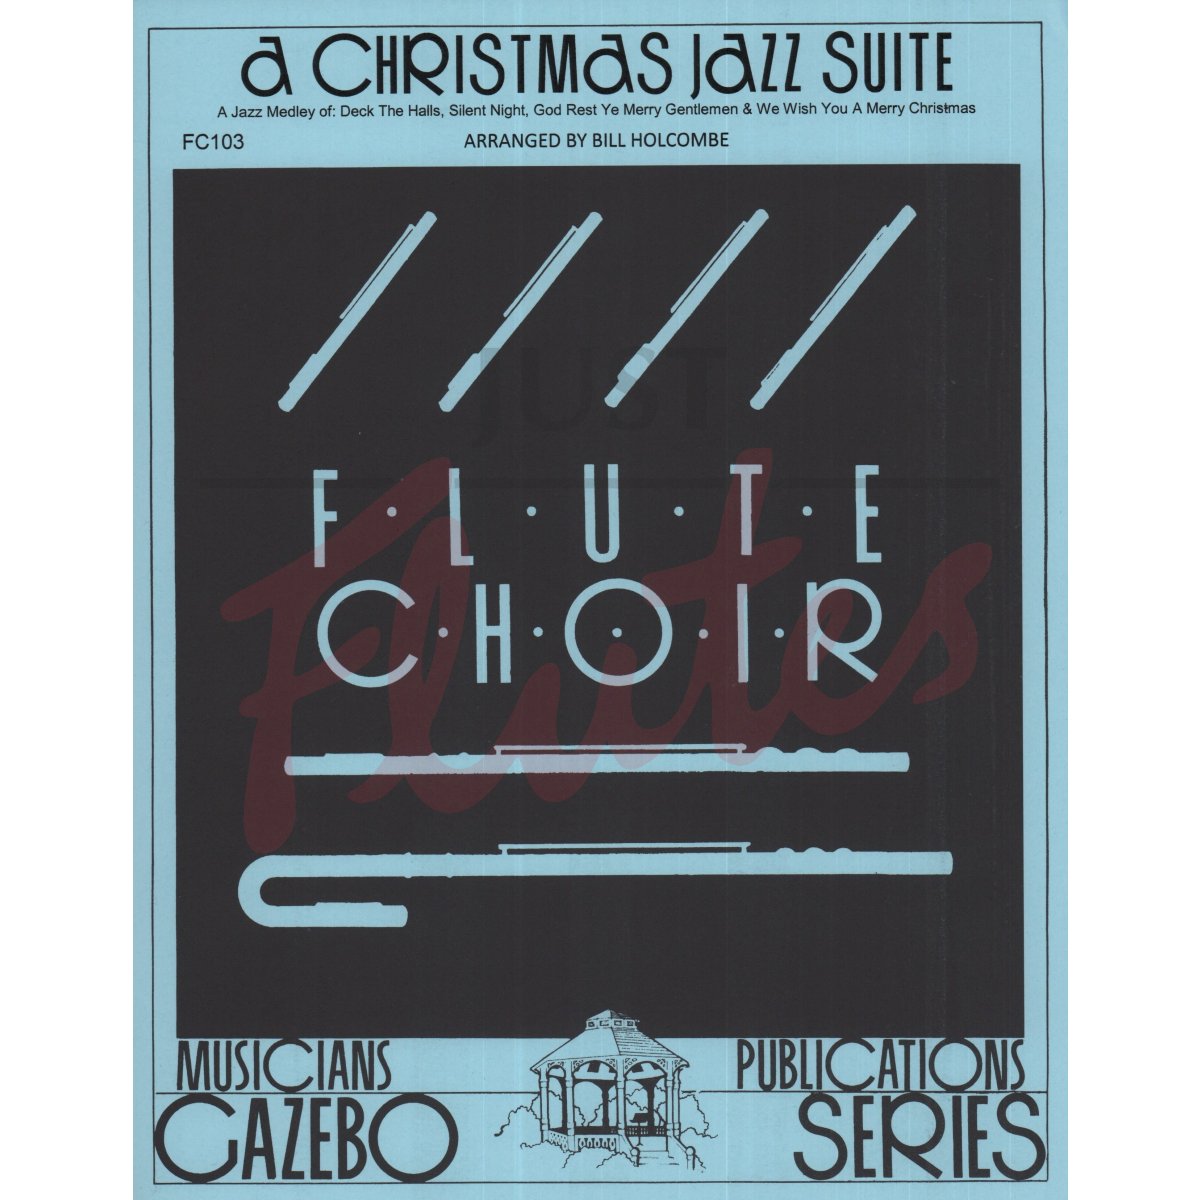 A Christmas Jazz Suite for Flute Quartet or Flute Choir